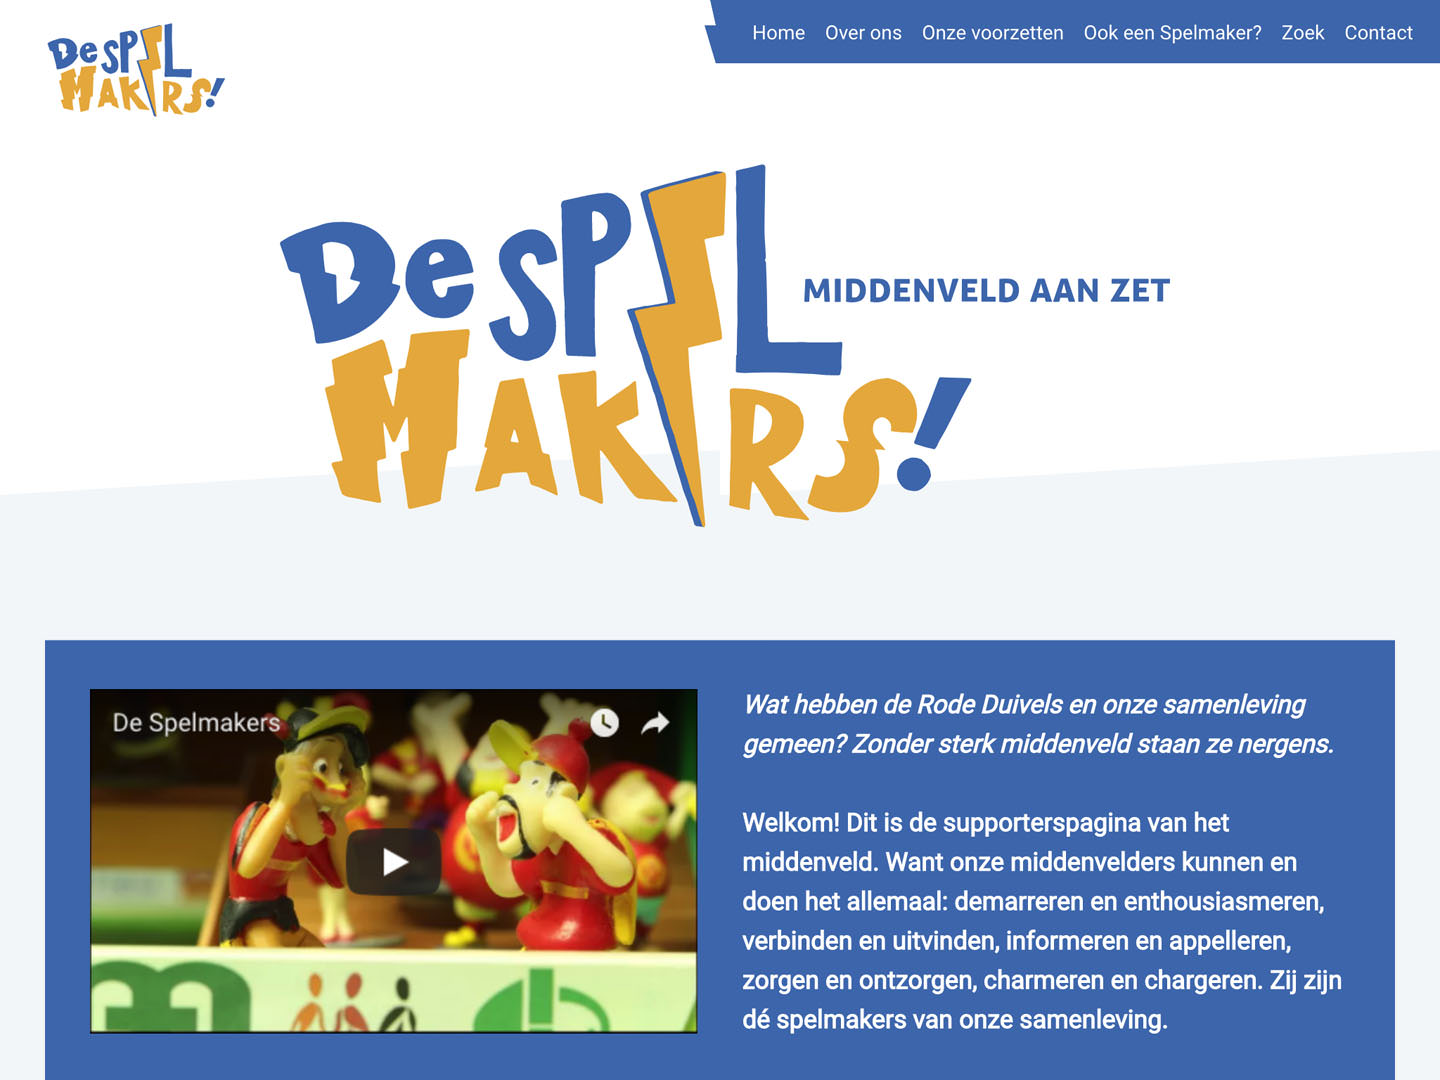 Homepage of De Spelmakers.